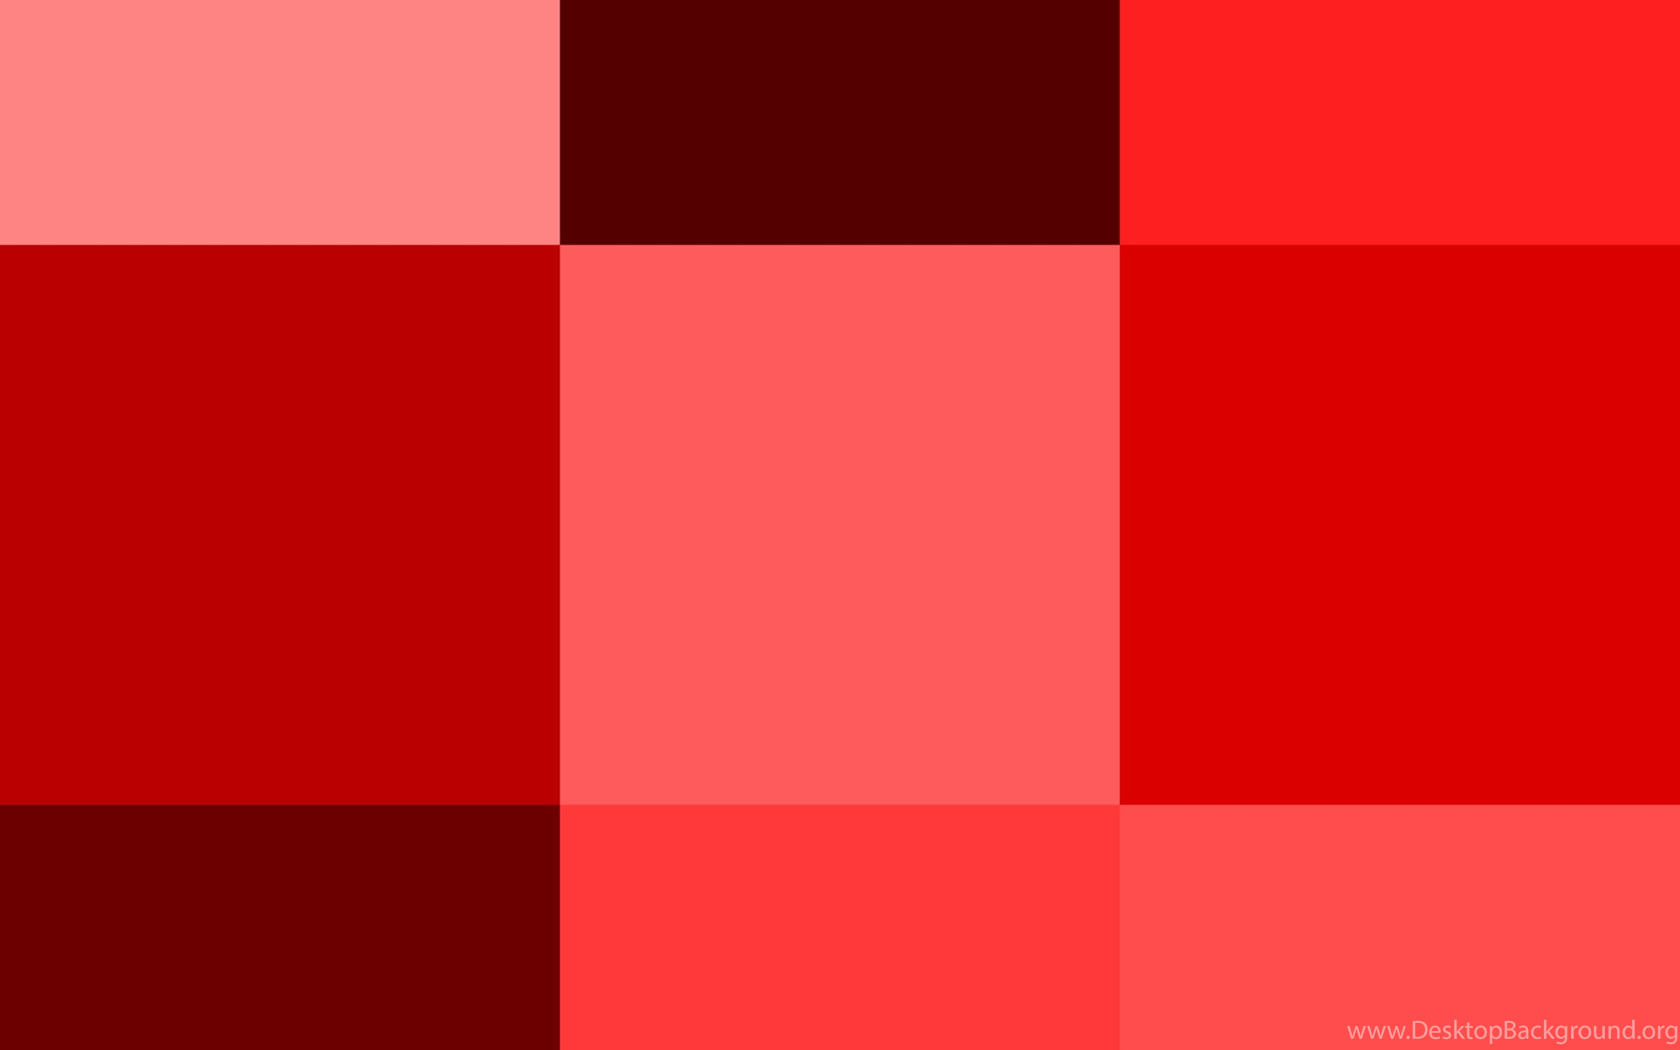 Красный насколько. Оттенки красного цвета. Палитра красных оттенков. Различные оттенки красного. Красный цвет разные оттенки.